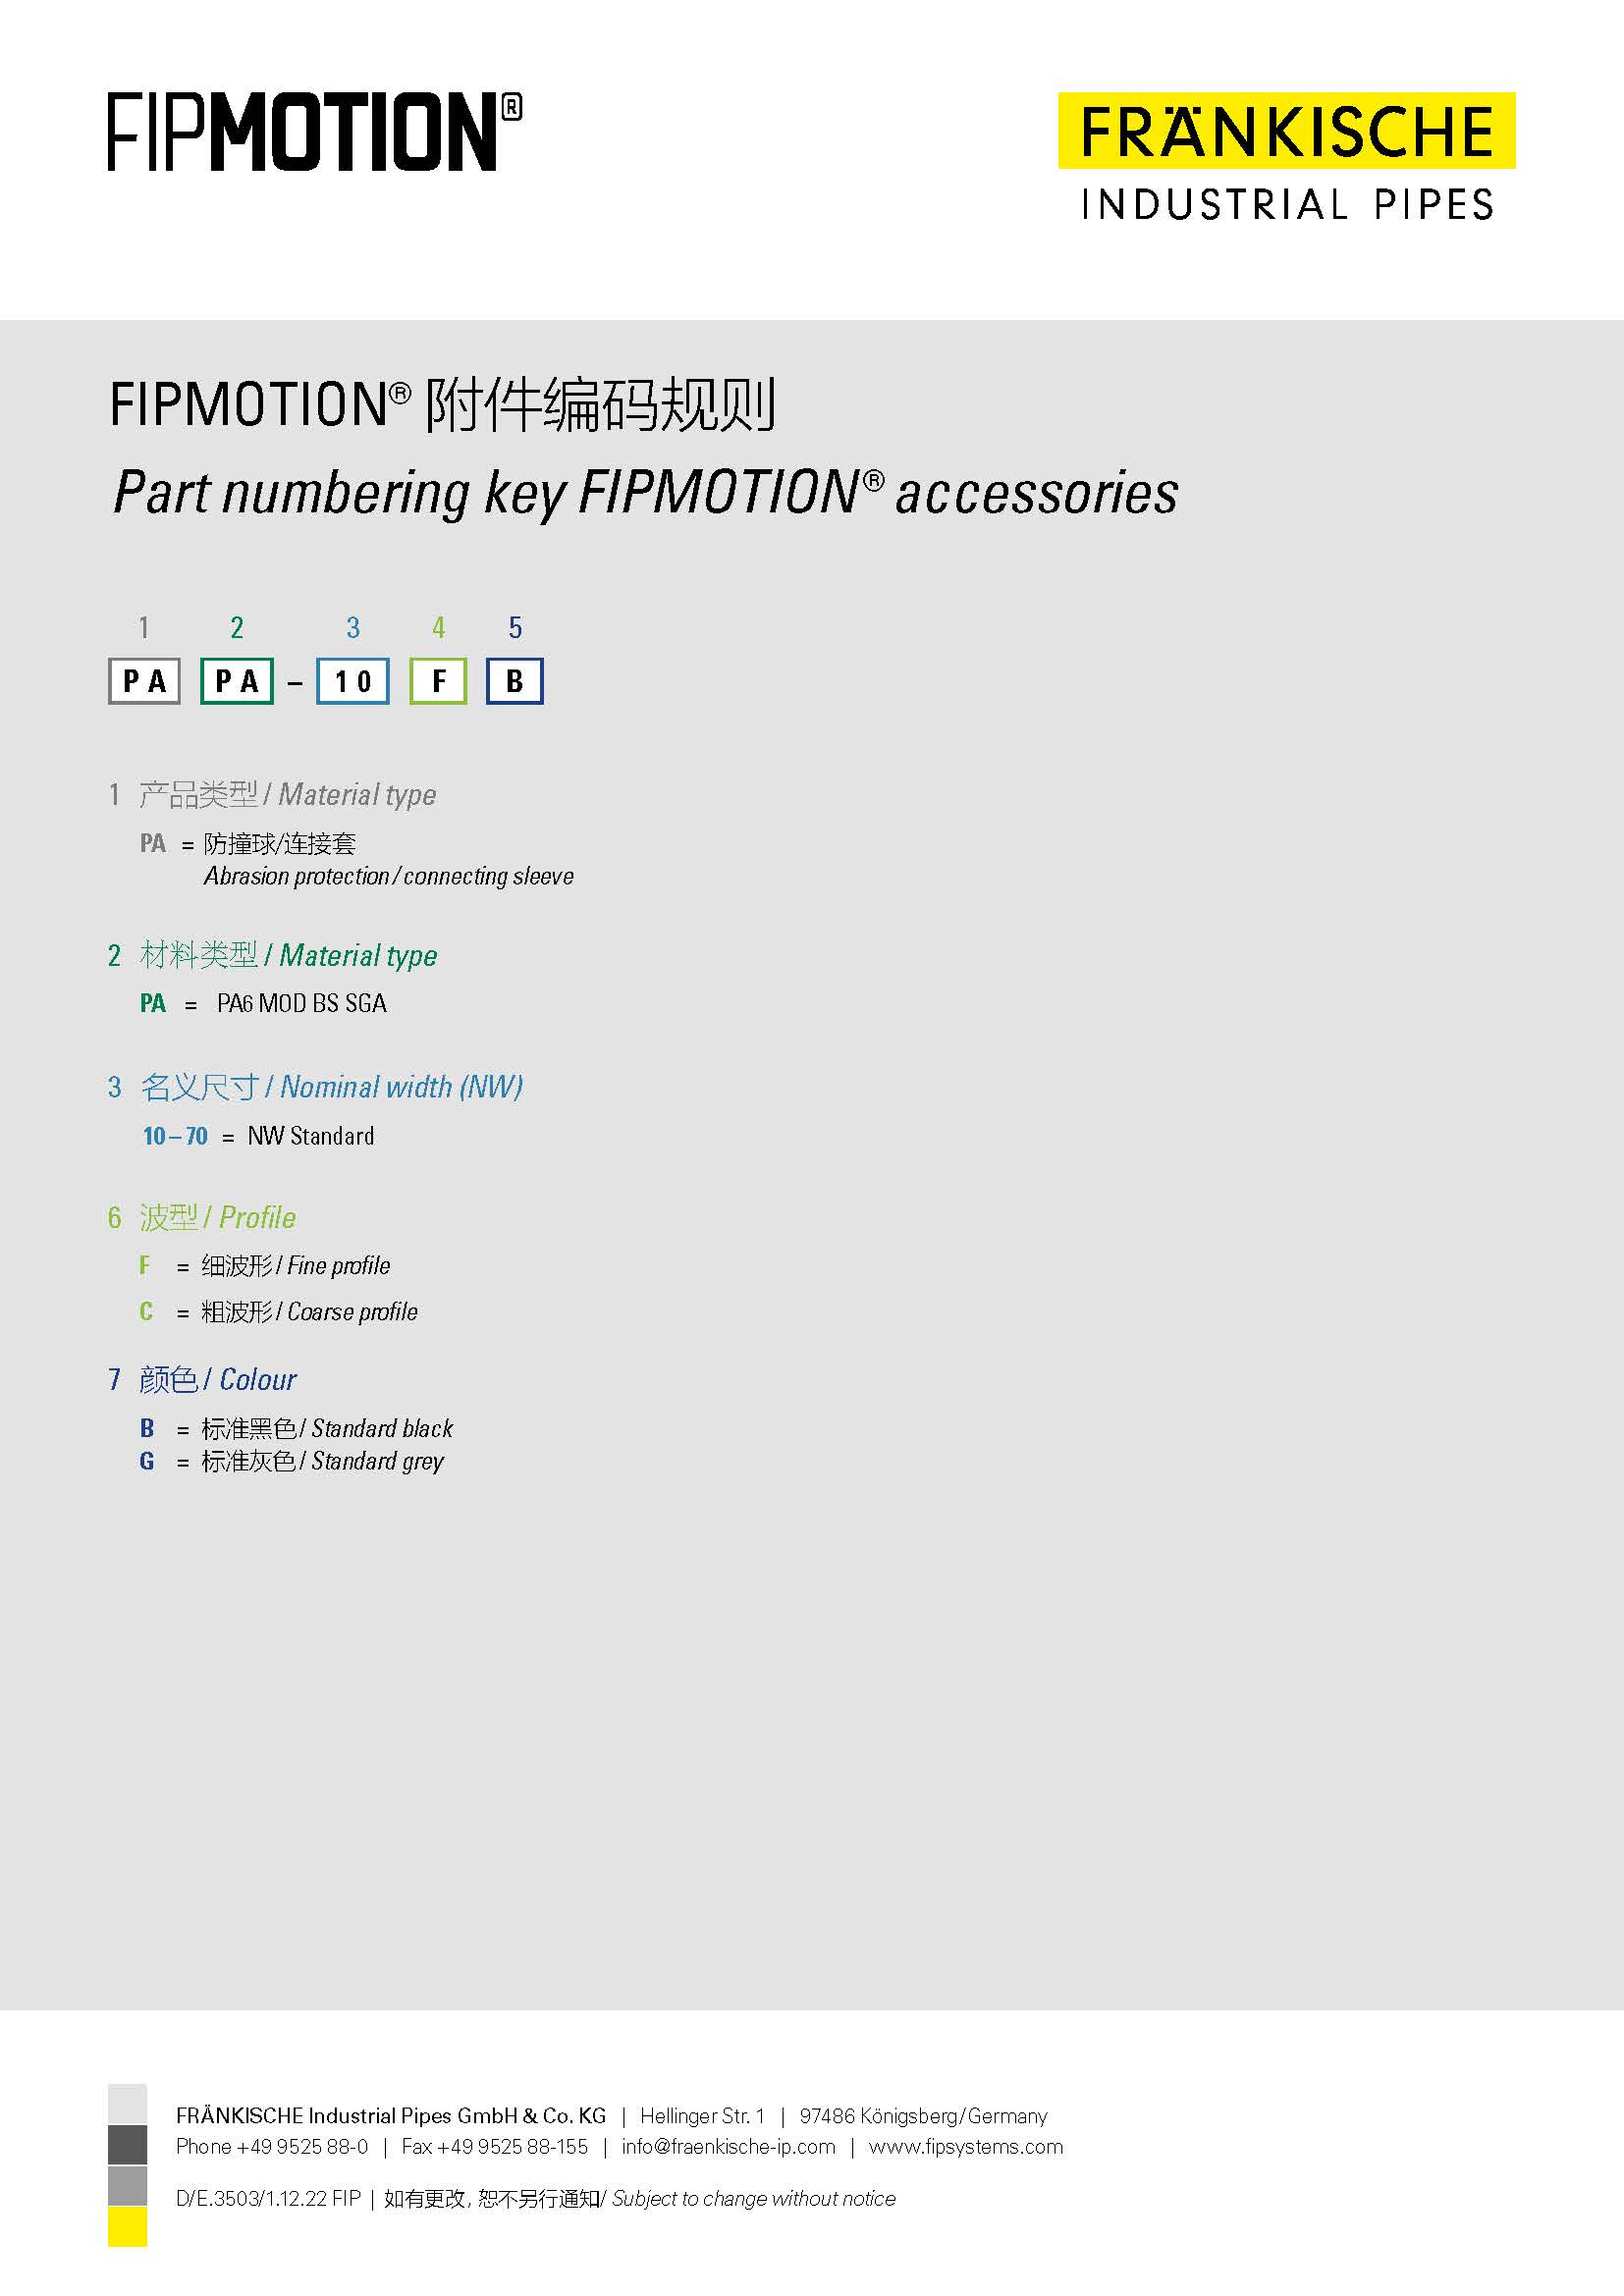 FIPMOTION® 附件编码规则 (1.3 MB)